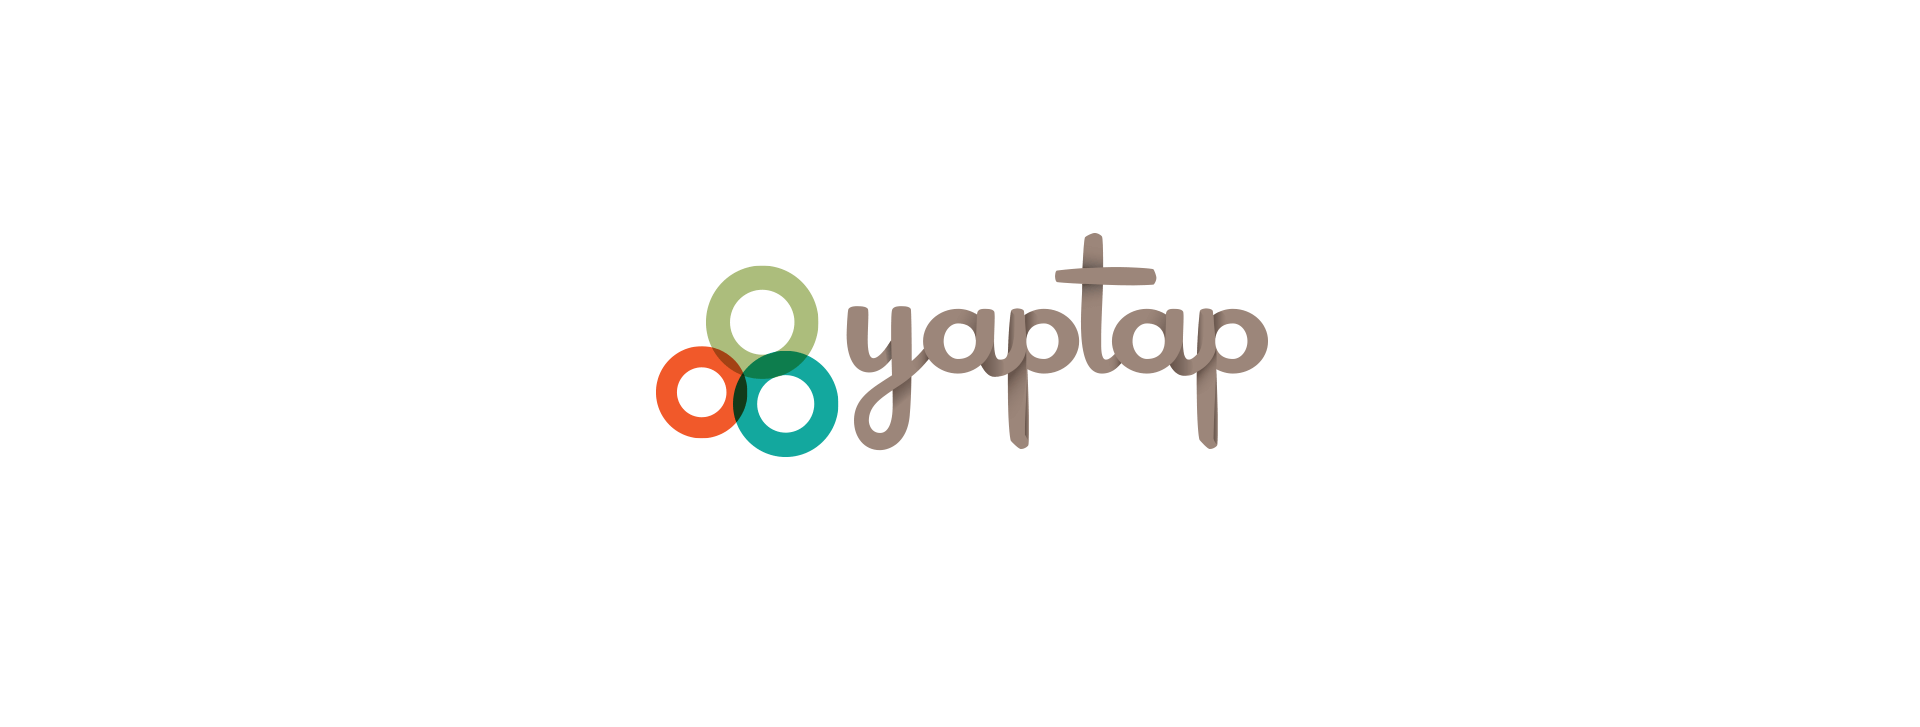 YapTap logo version 2